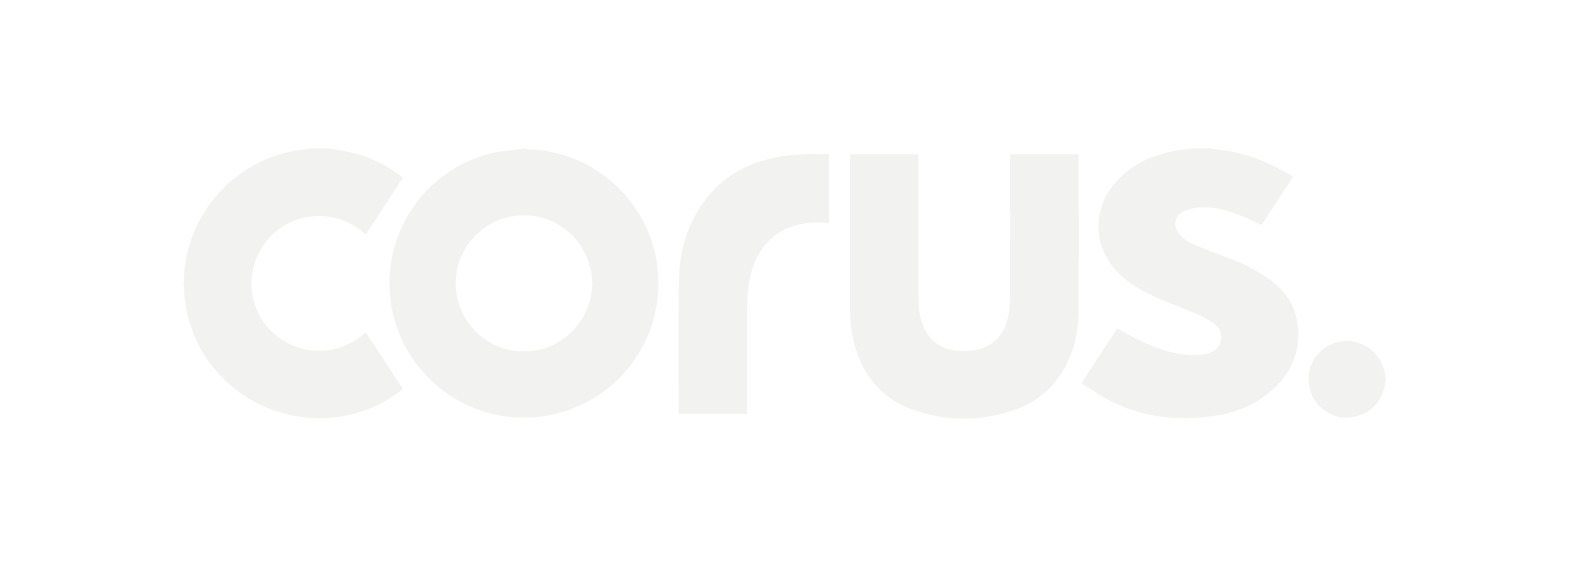 Corus logo in white